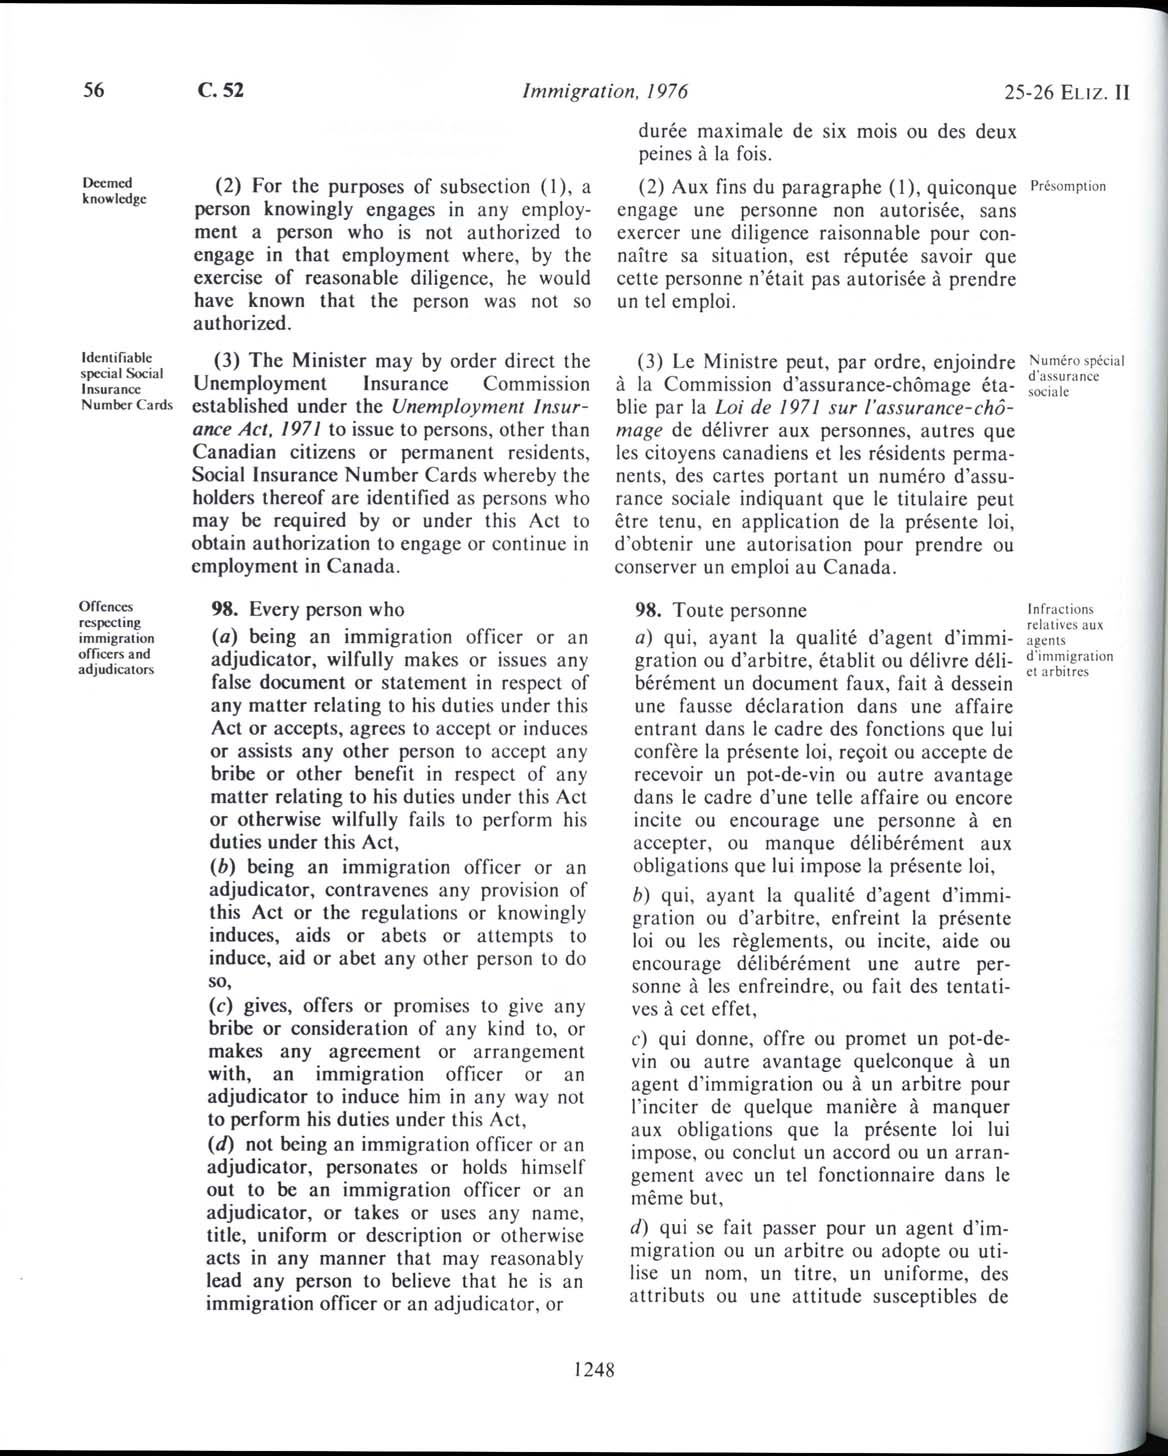 Page 1248 Loi sur l’immigration de 1976